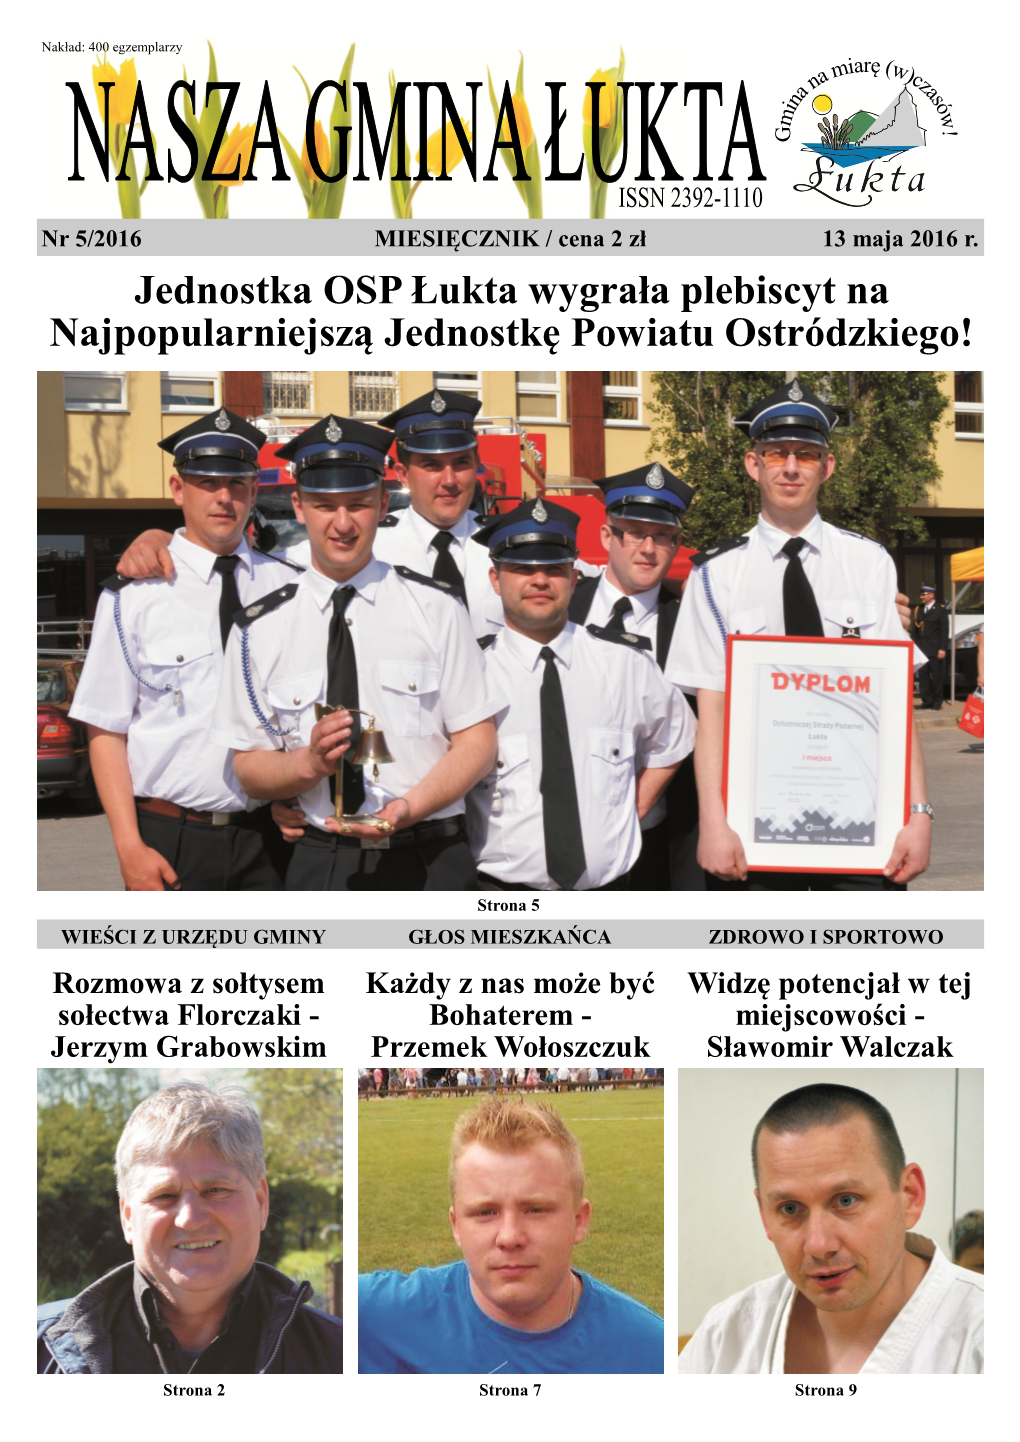 Jednostka OSP Łukta Wygrała Plebiscyt Na Najpopularniejszą Jednostkę Powiatu Ostródzkiego!